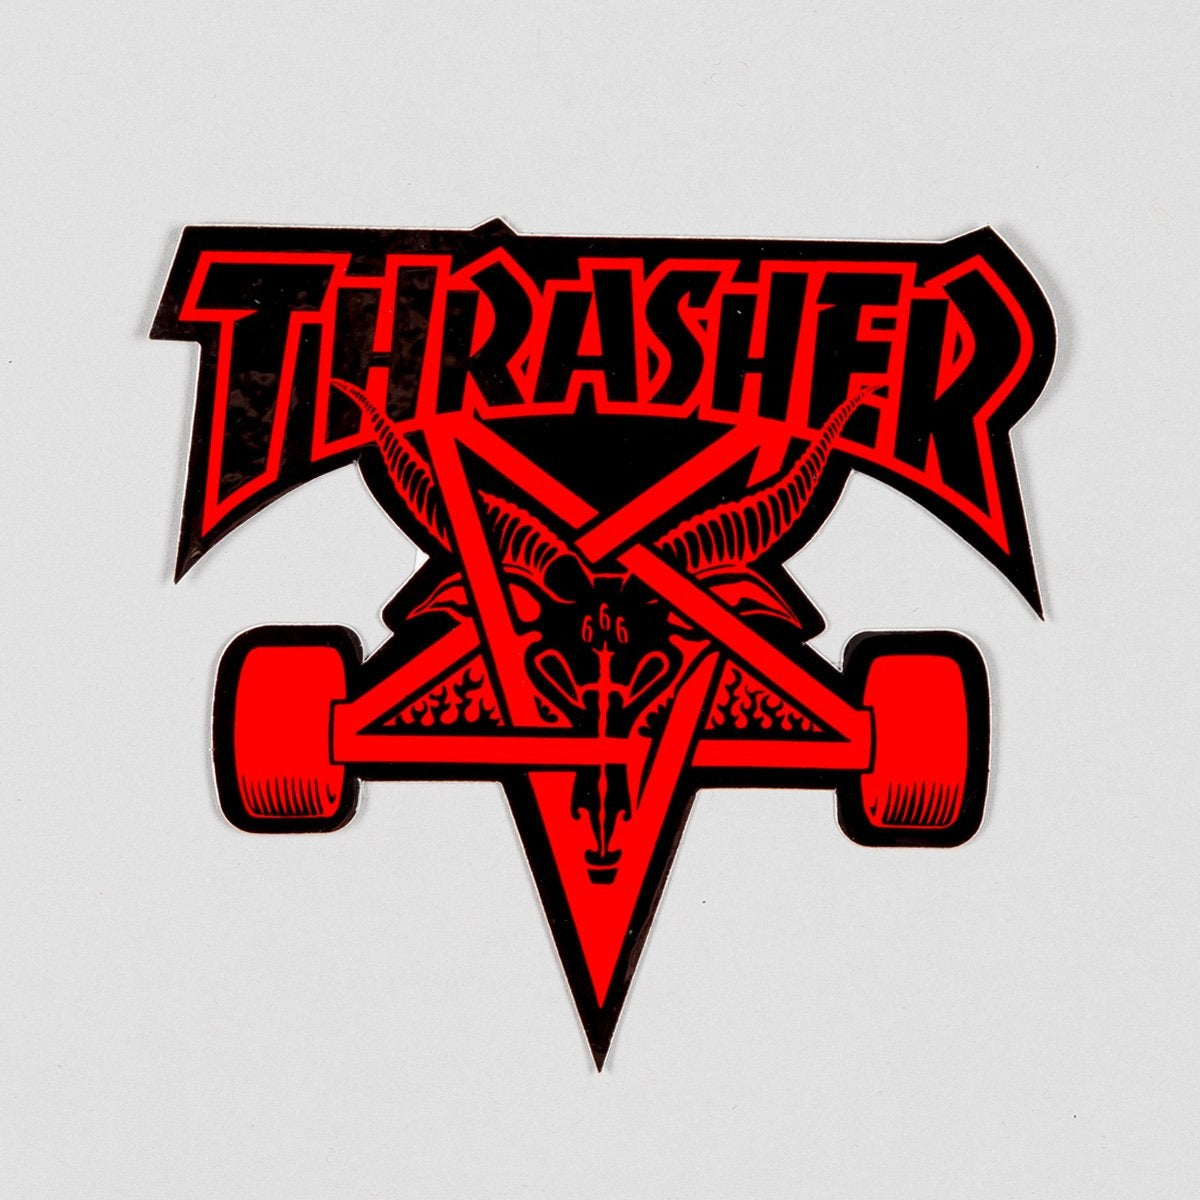 Thrasher Skate Goat Sticker Black/Red Medium - Skateboard